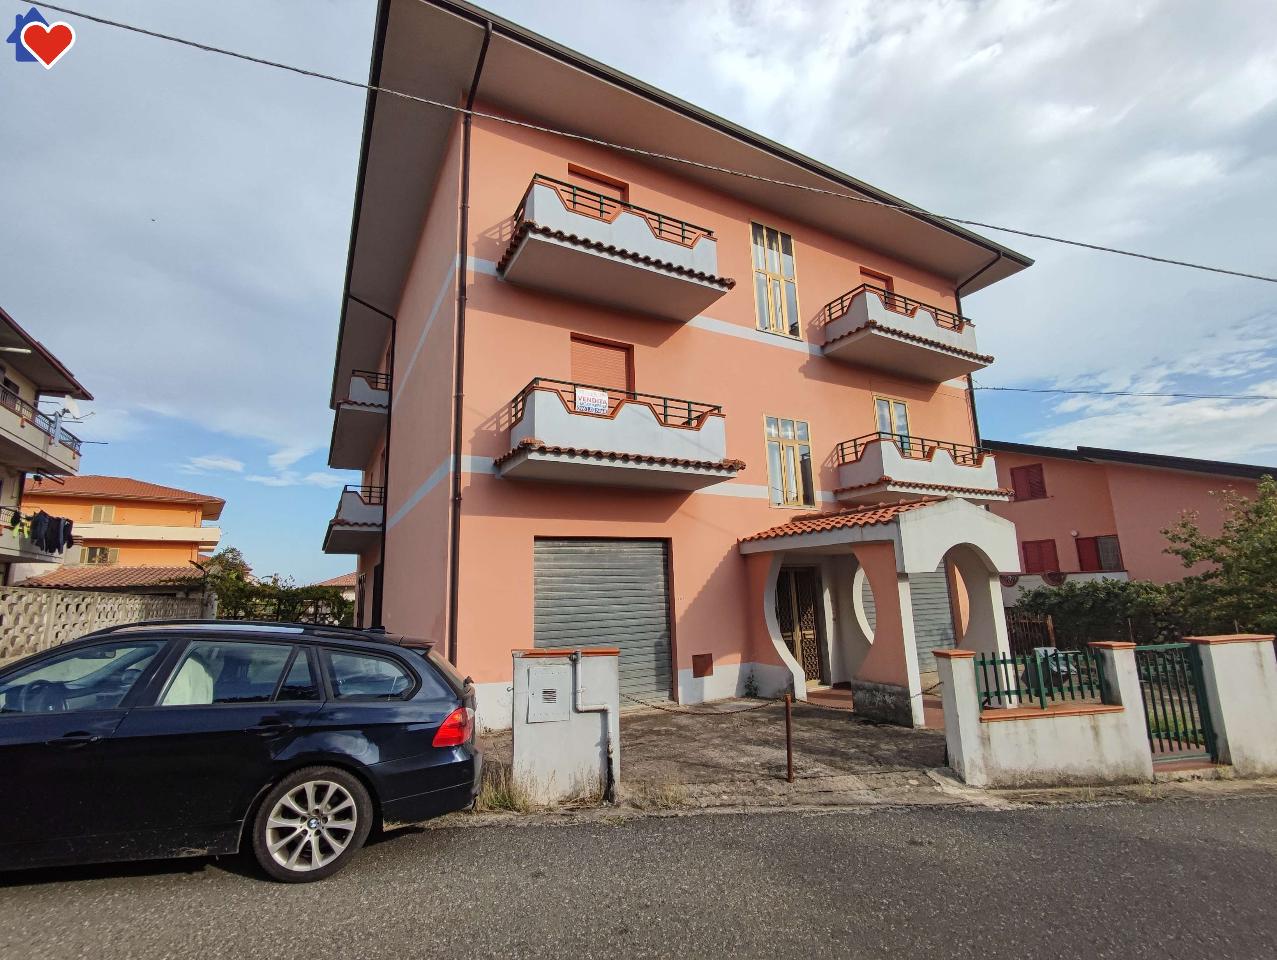 Villa in vendita a Vallefiorita